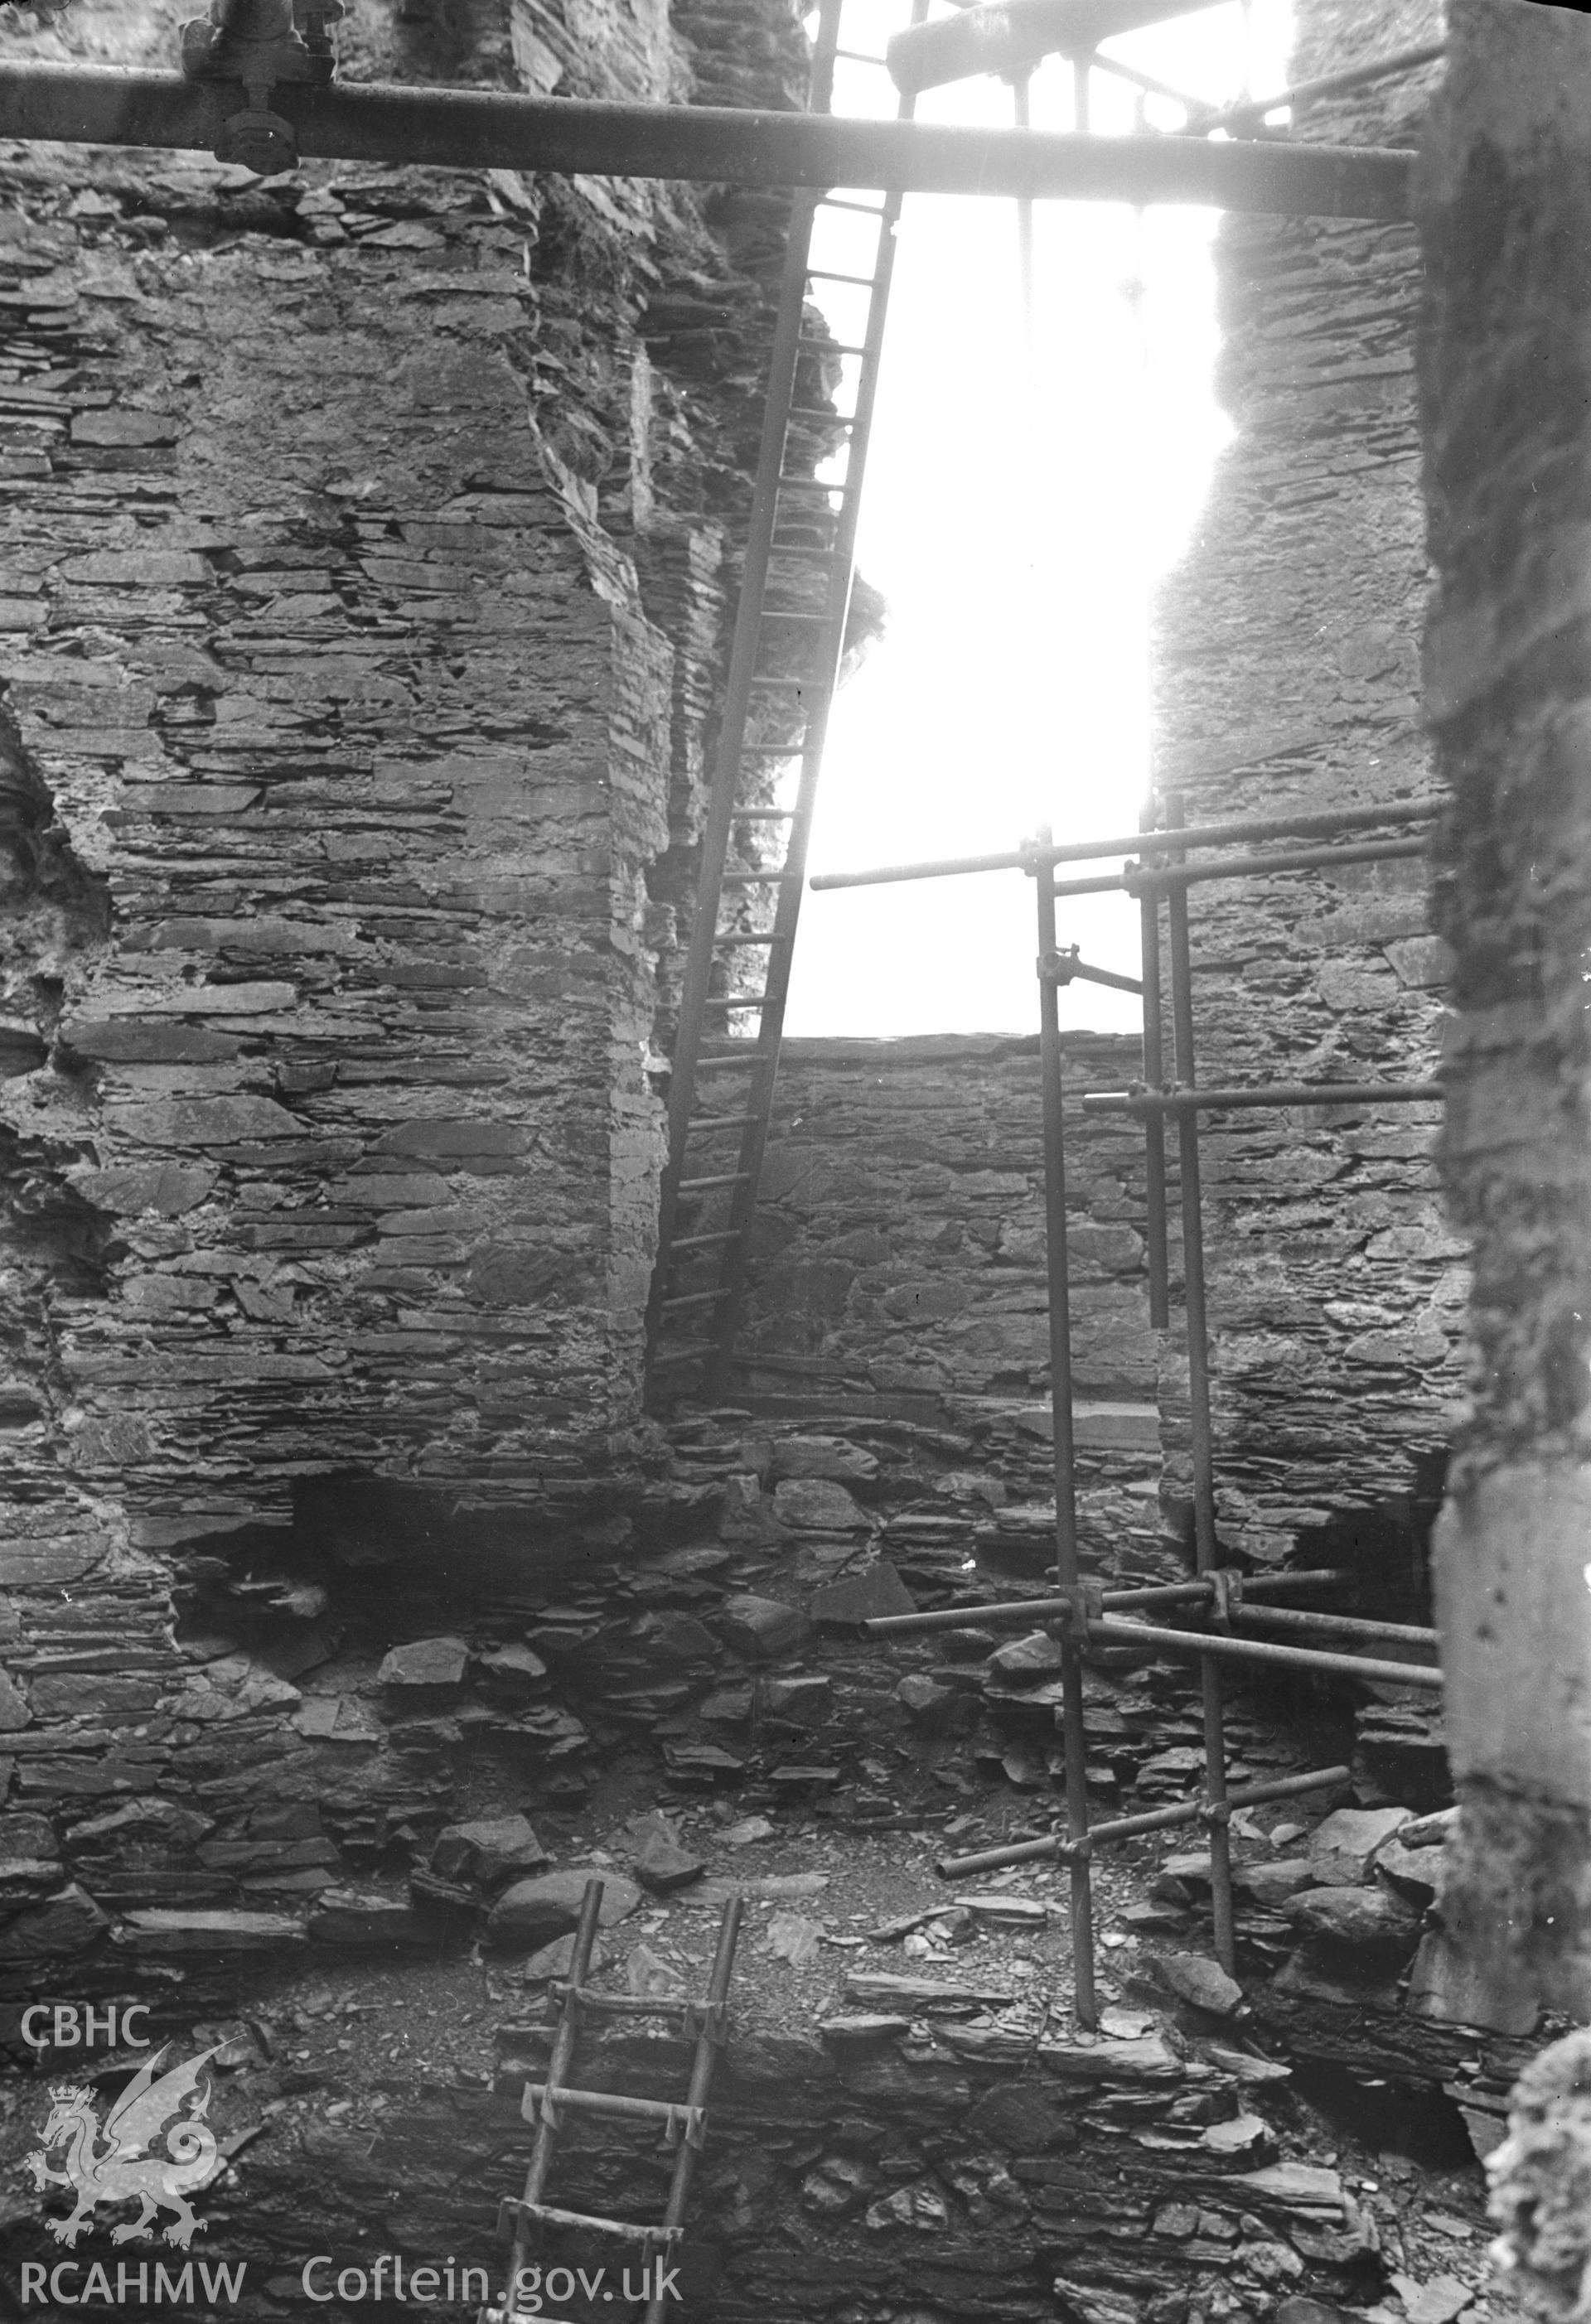 D.O.E photograph of Dolbadarn Castle.